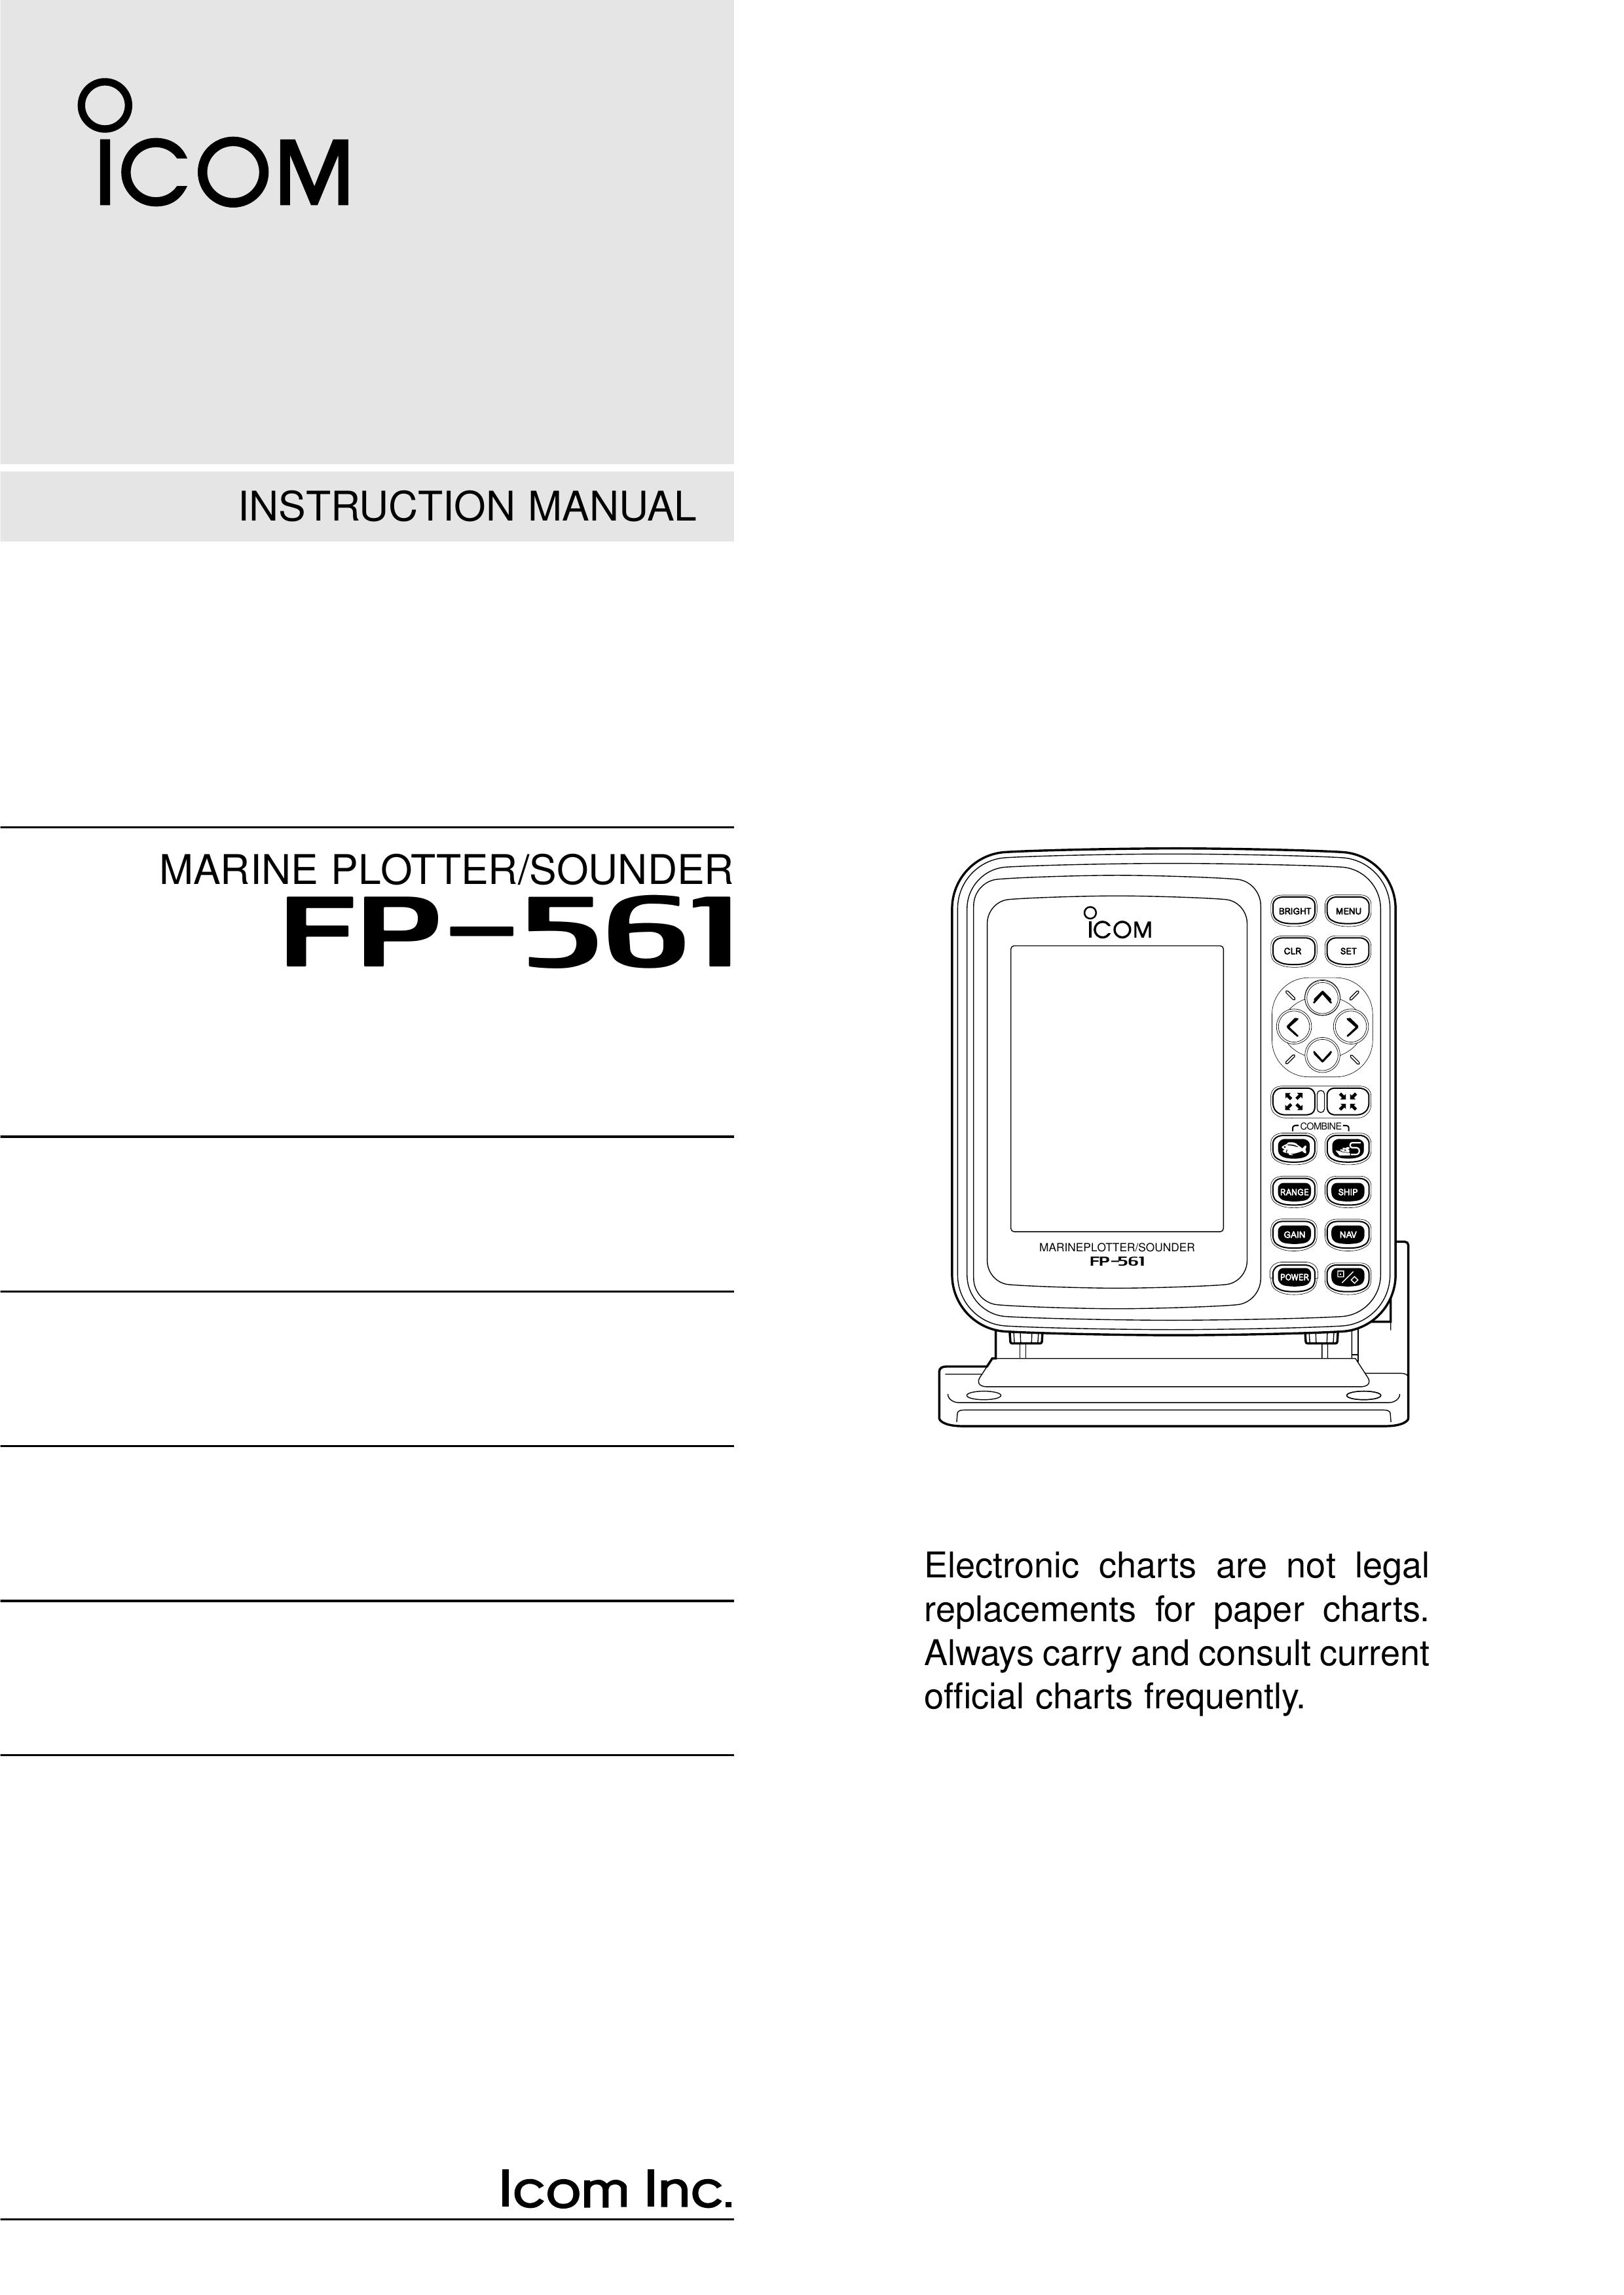 Icom FP-561 Marine Radio User Manual